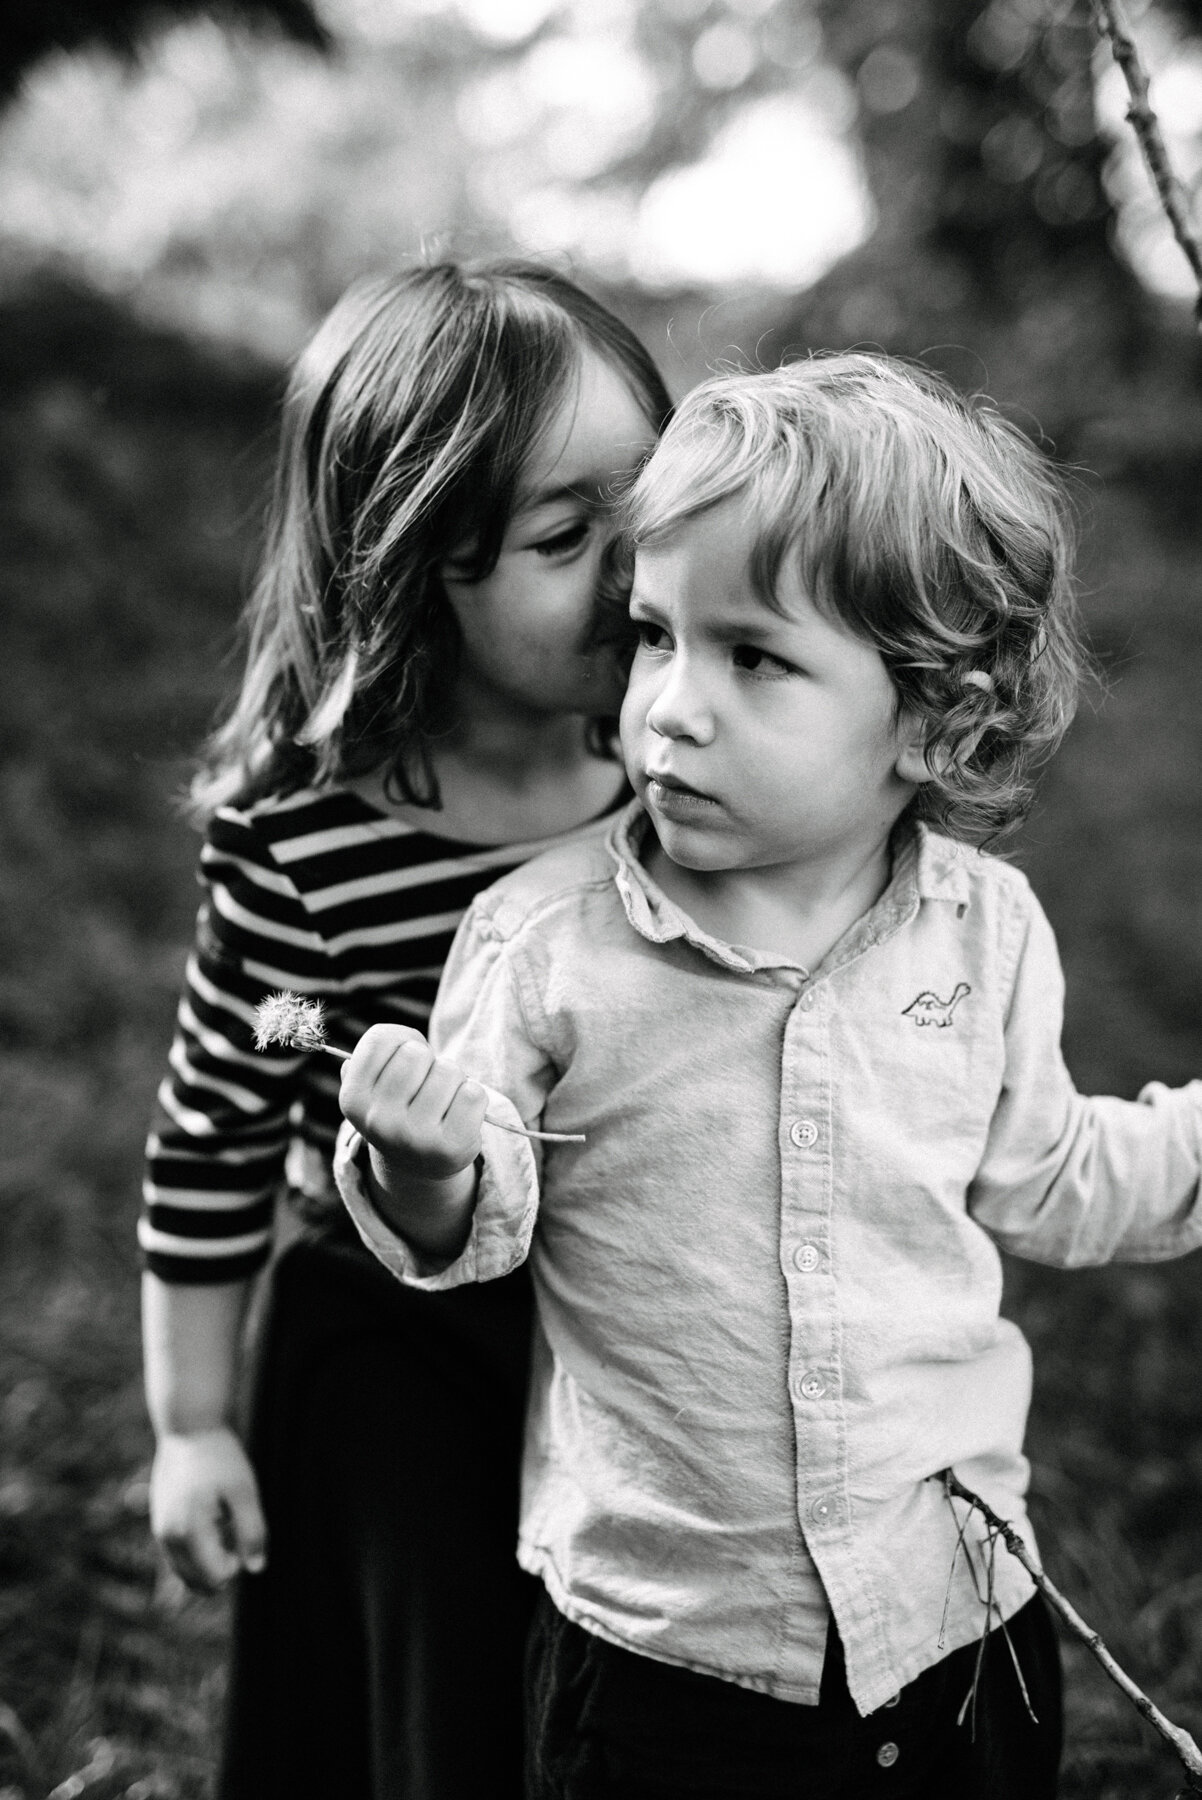 057photo-noir-et-blanc-grande-soeur-taquine-qui-embrasse-son-petit-frere-par-derriere-dans-un-parc-photographe-de-famille-a-montreal-marianne-charland-599.jpg